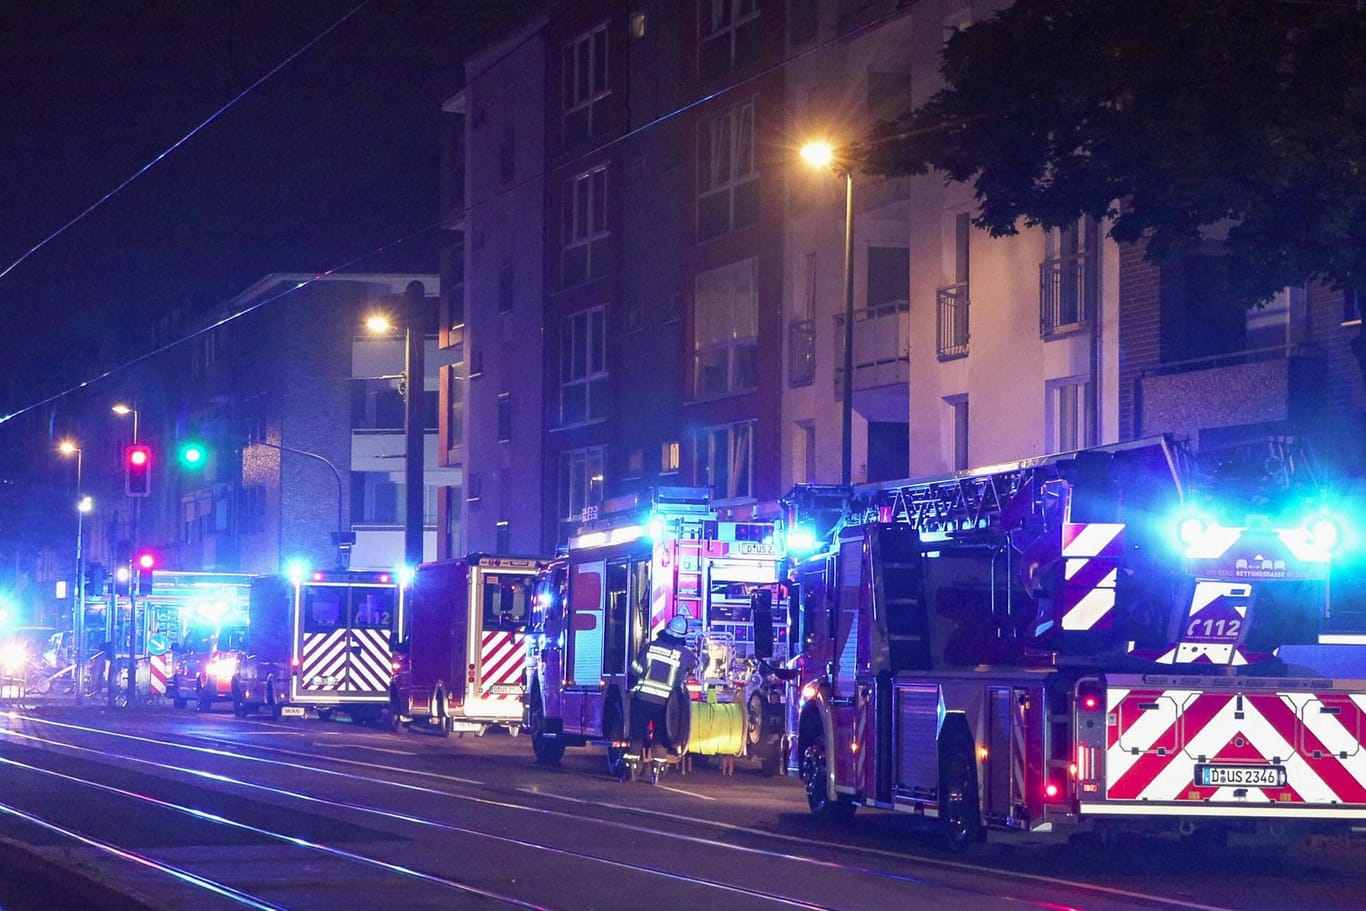 Feuerwehreinsatz in Düsseldorf am Donnerstagabend: Bei dem Brand soll ein hoher Schaden entstanden sein.